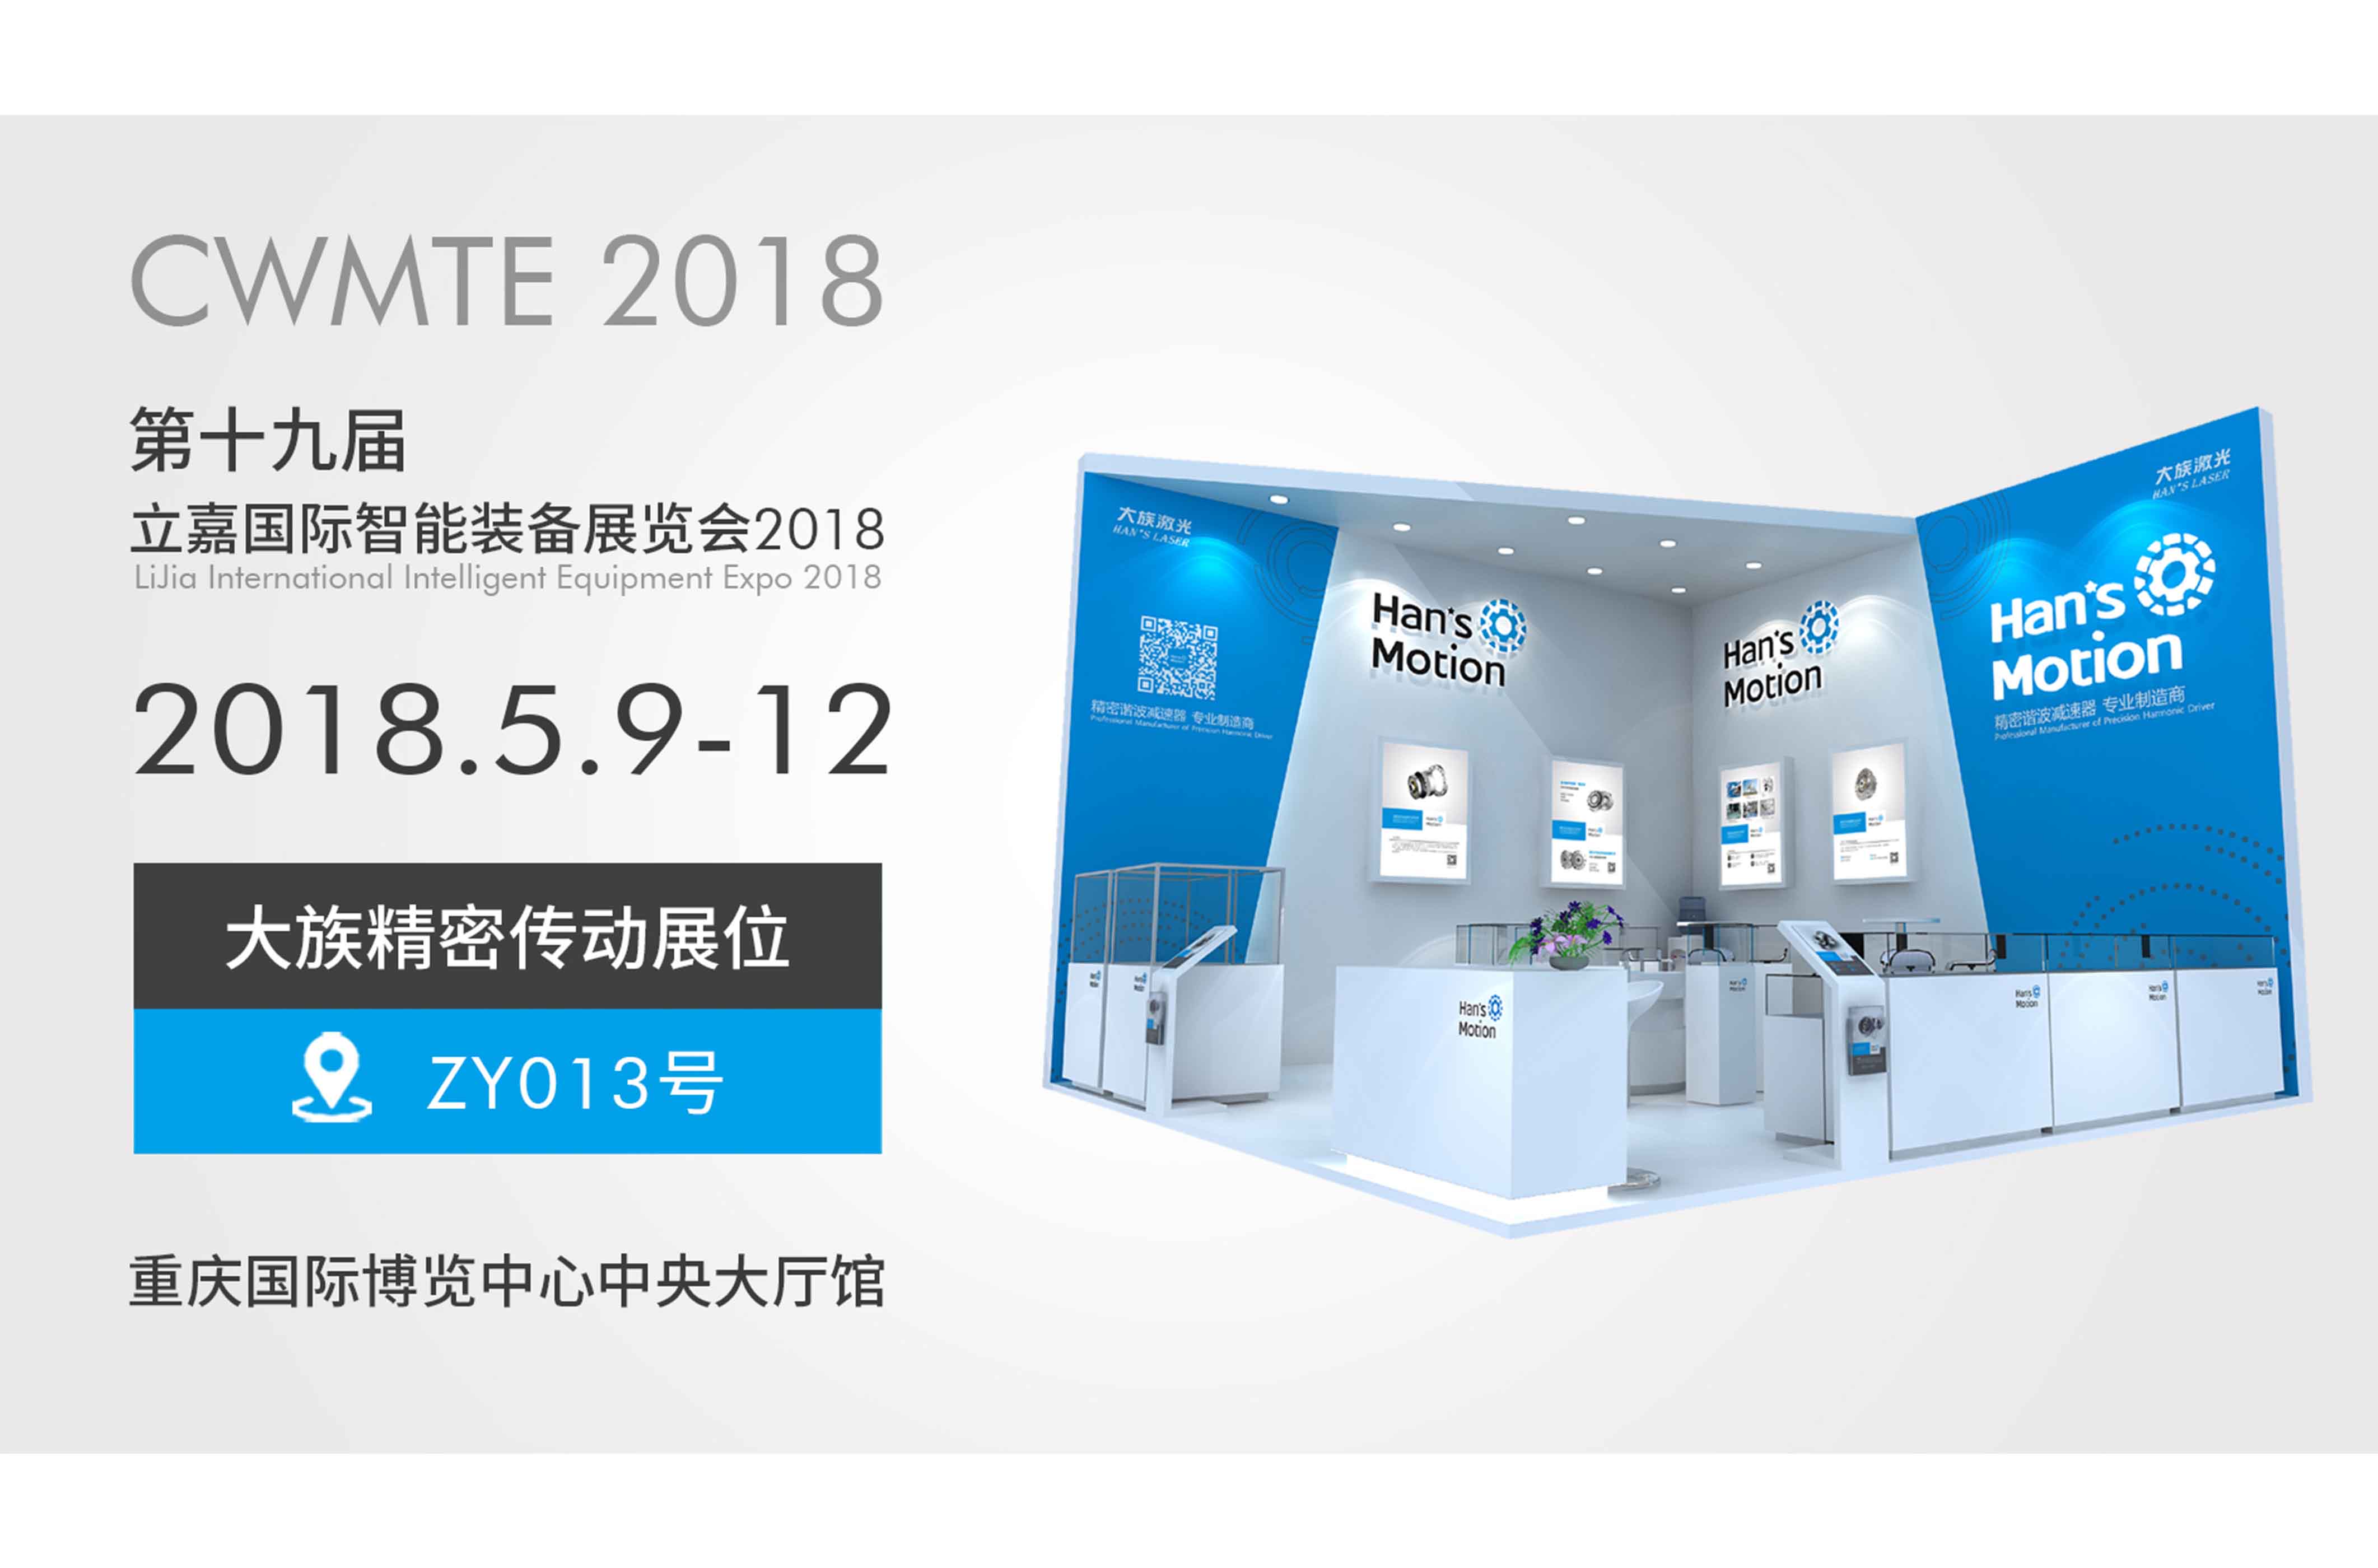 展会预告 | CWMTE 2018 (重庆立嘉国际智能装备展)